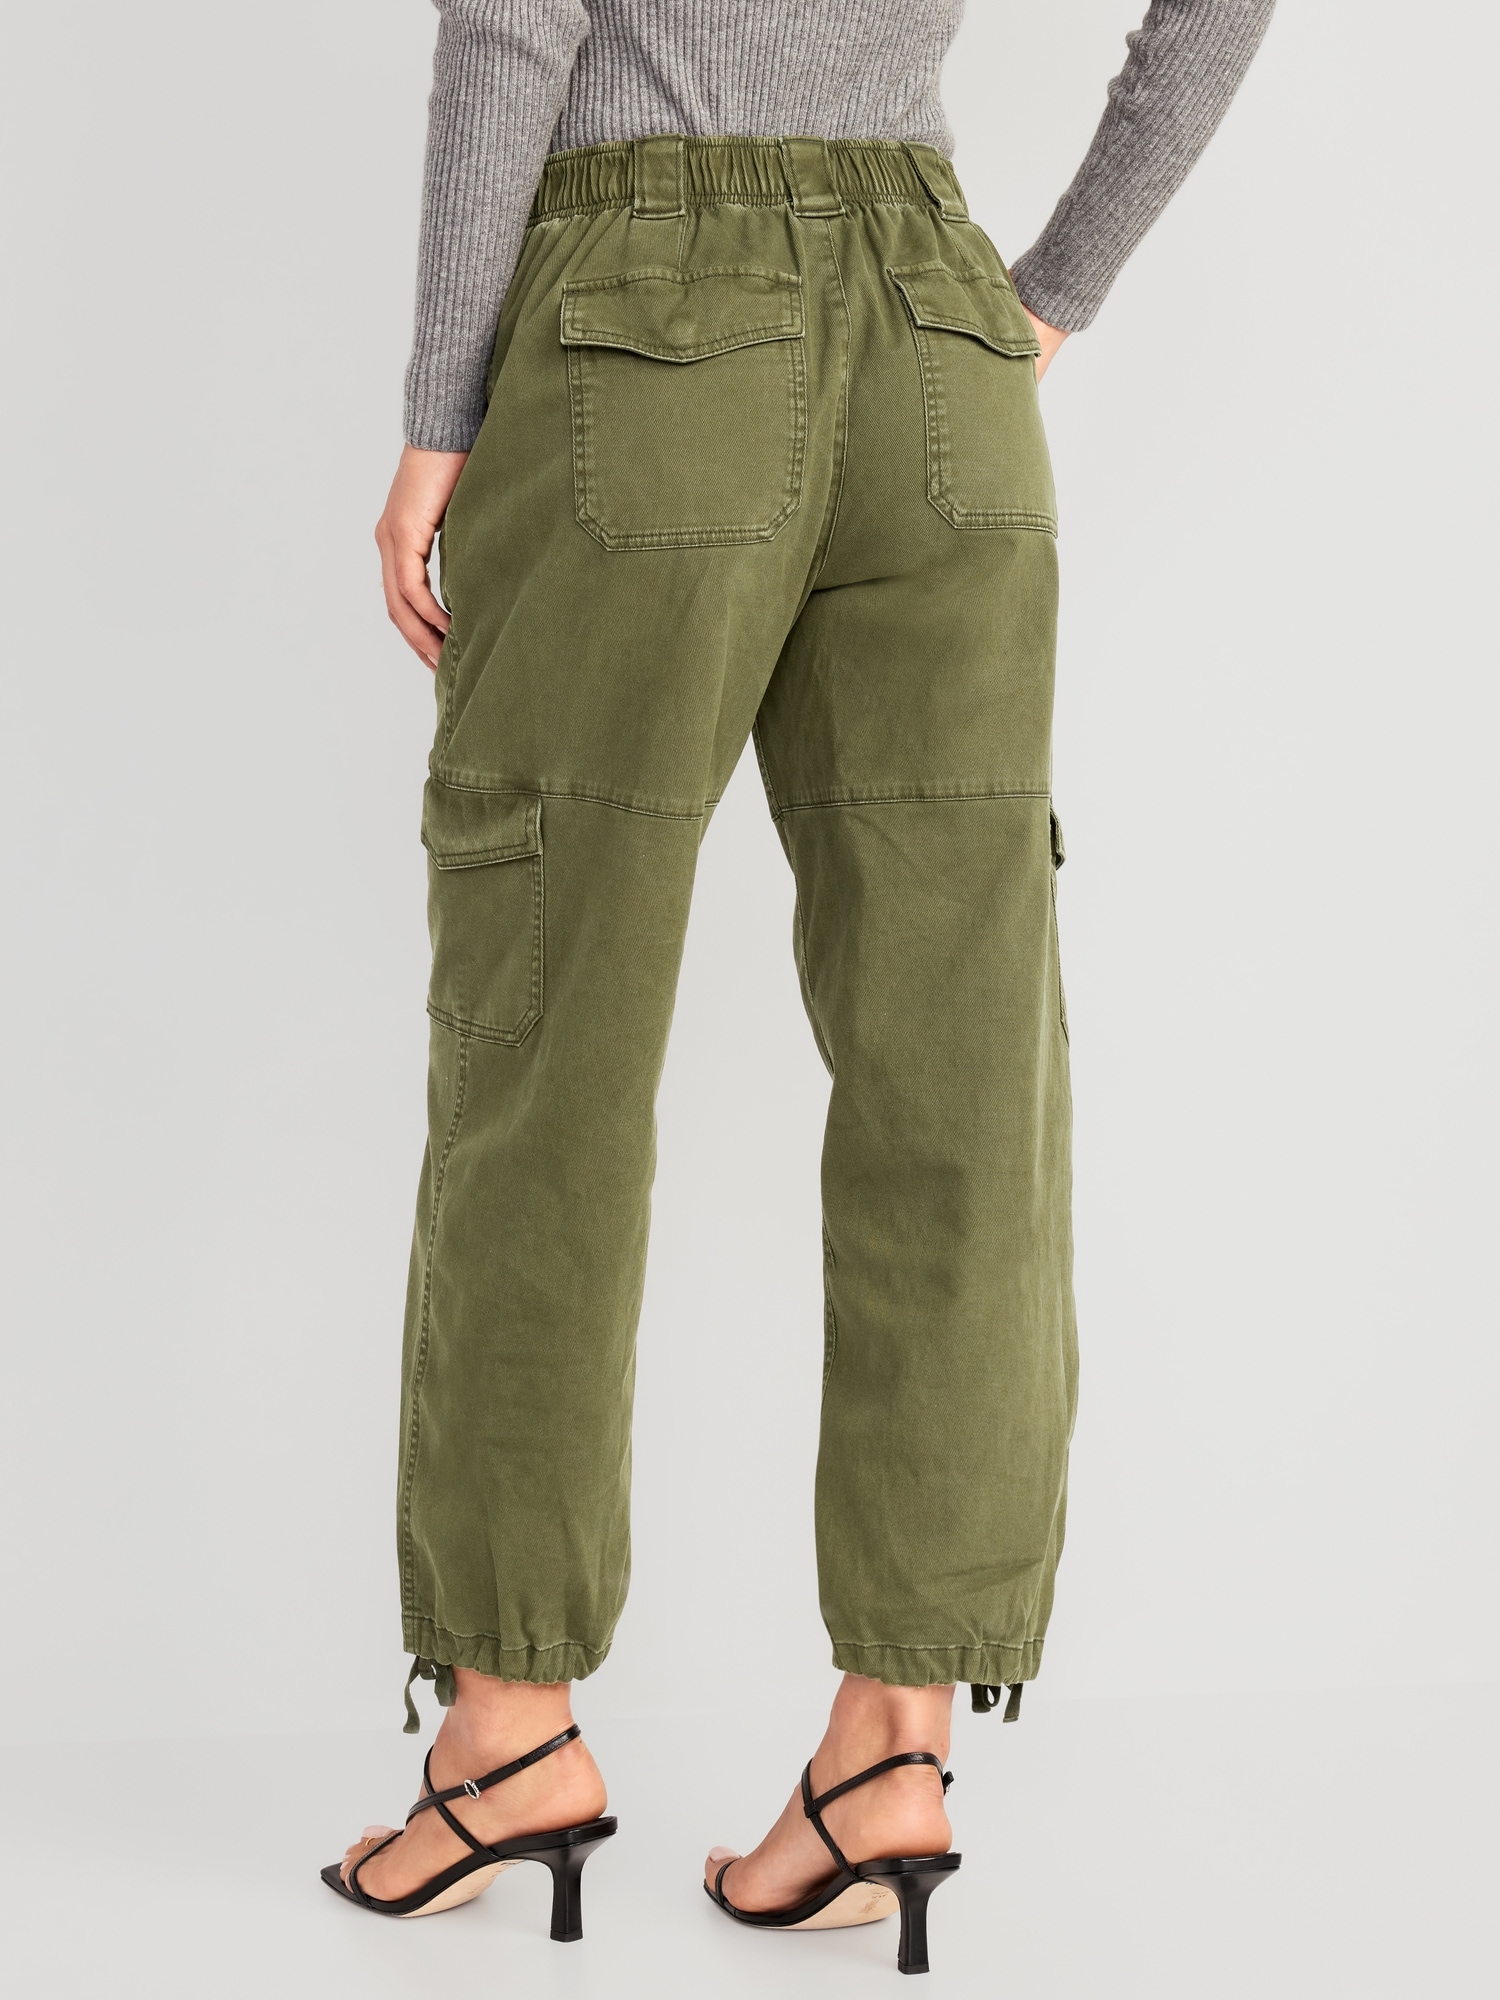 Online Shop - Cargo Pants Women High Waist Denim Overalls Casual